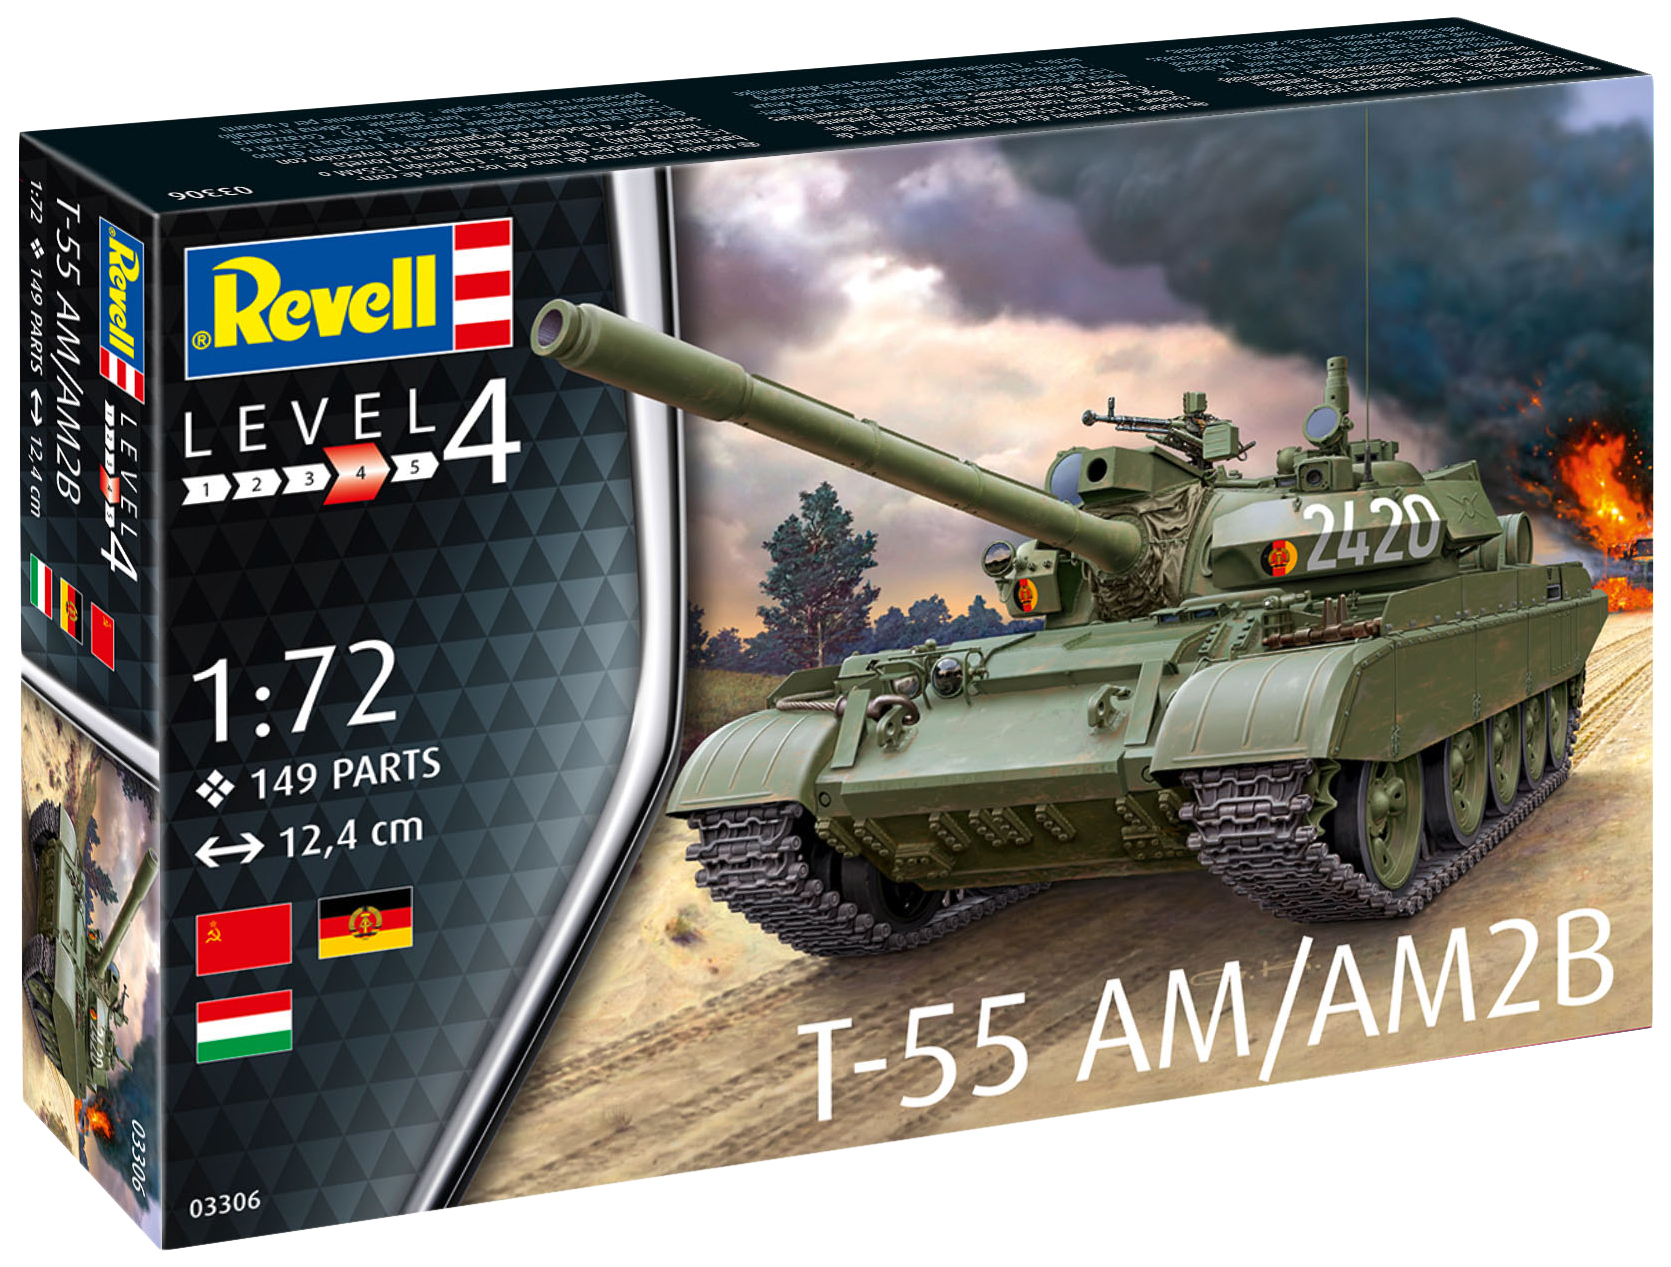    T-55AM  T-55AM2B 172 Revell -      